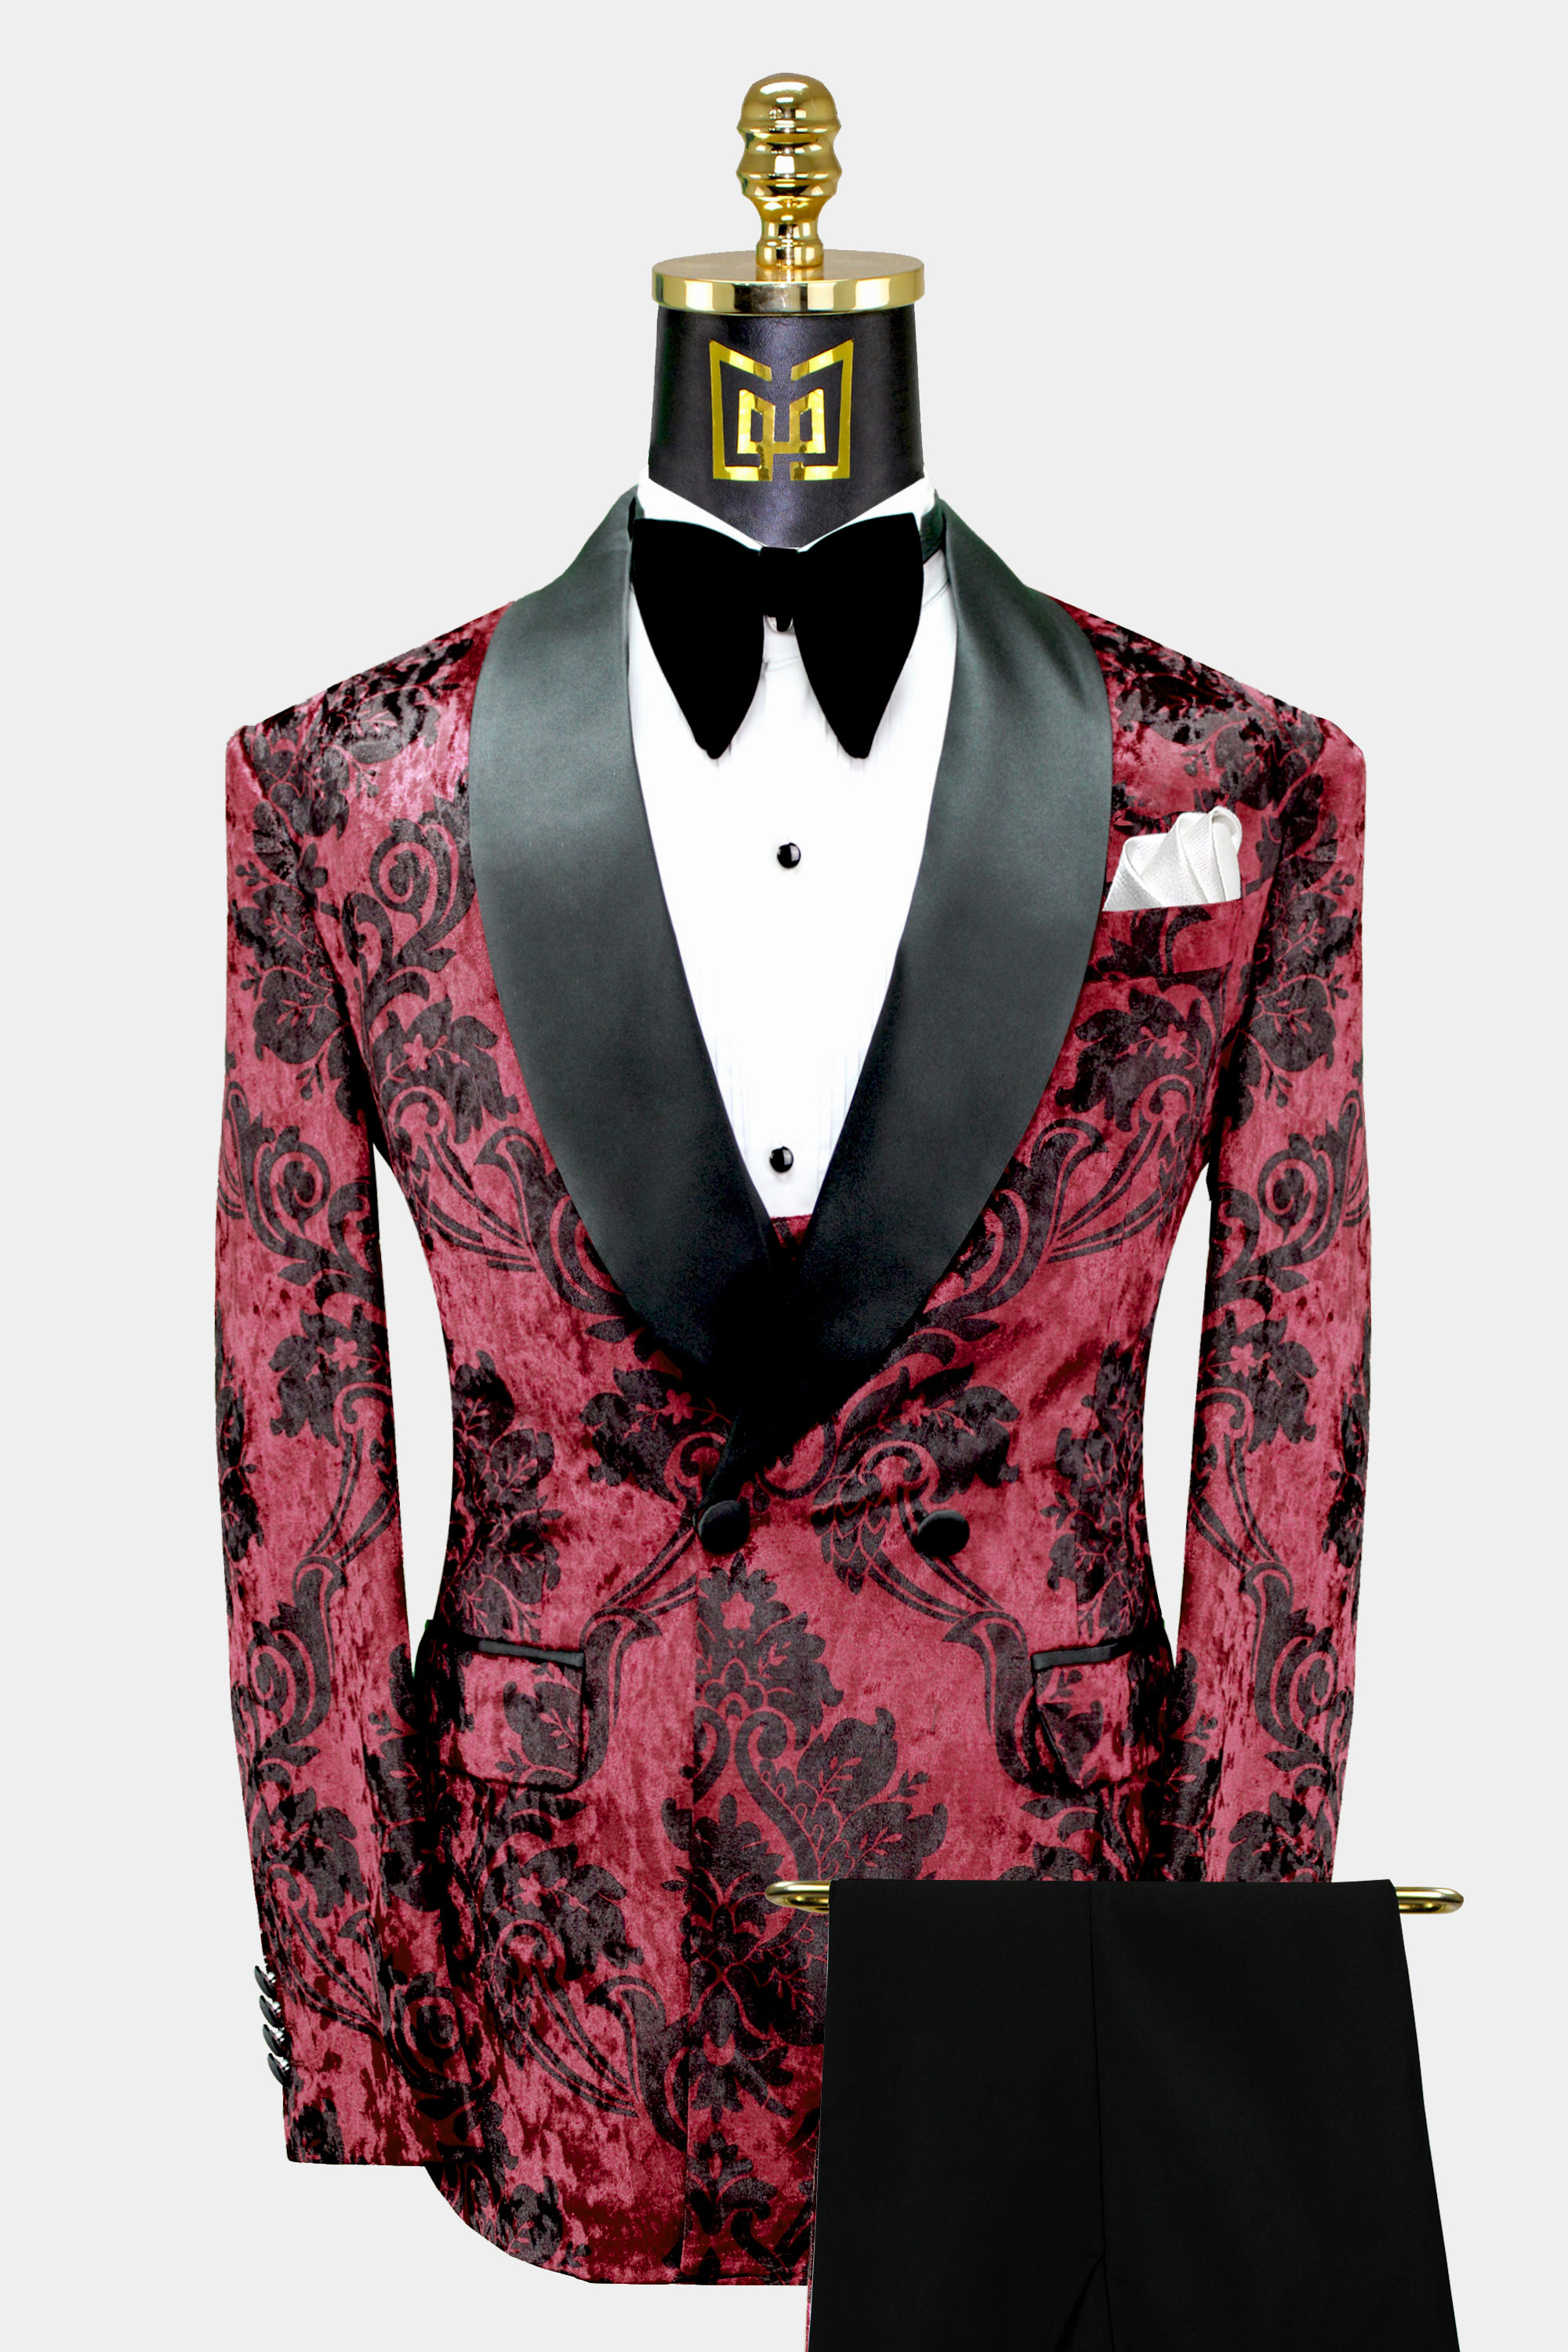 Burgundy-Velvet-Tuxedo-Suit-Wedding-Groom-For-Men-from-Gentlemansguru.com